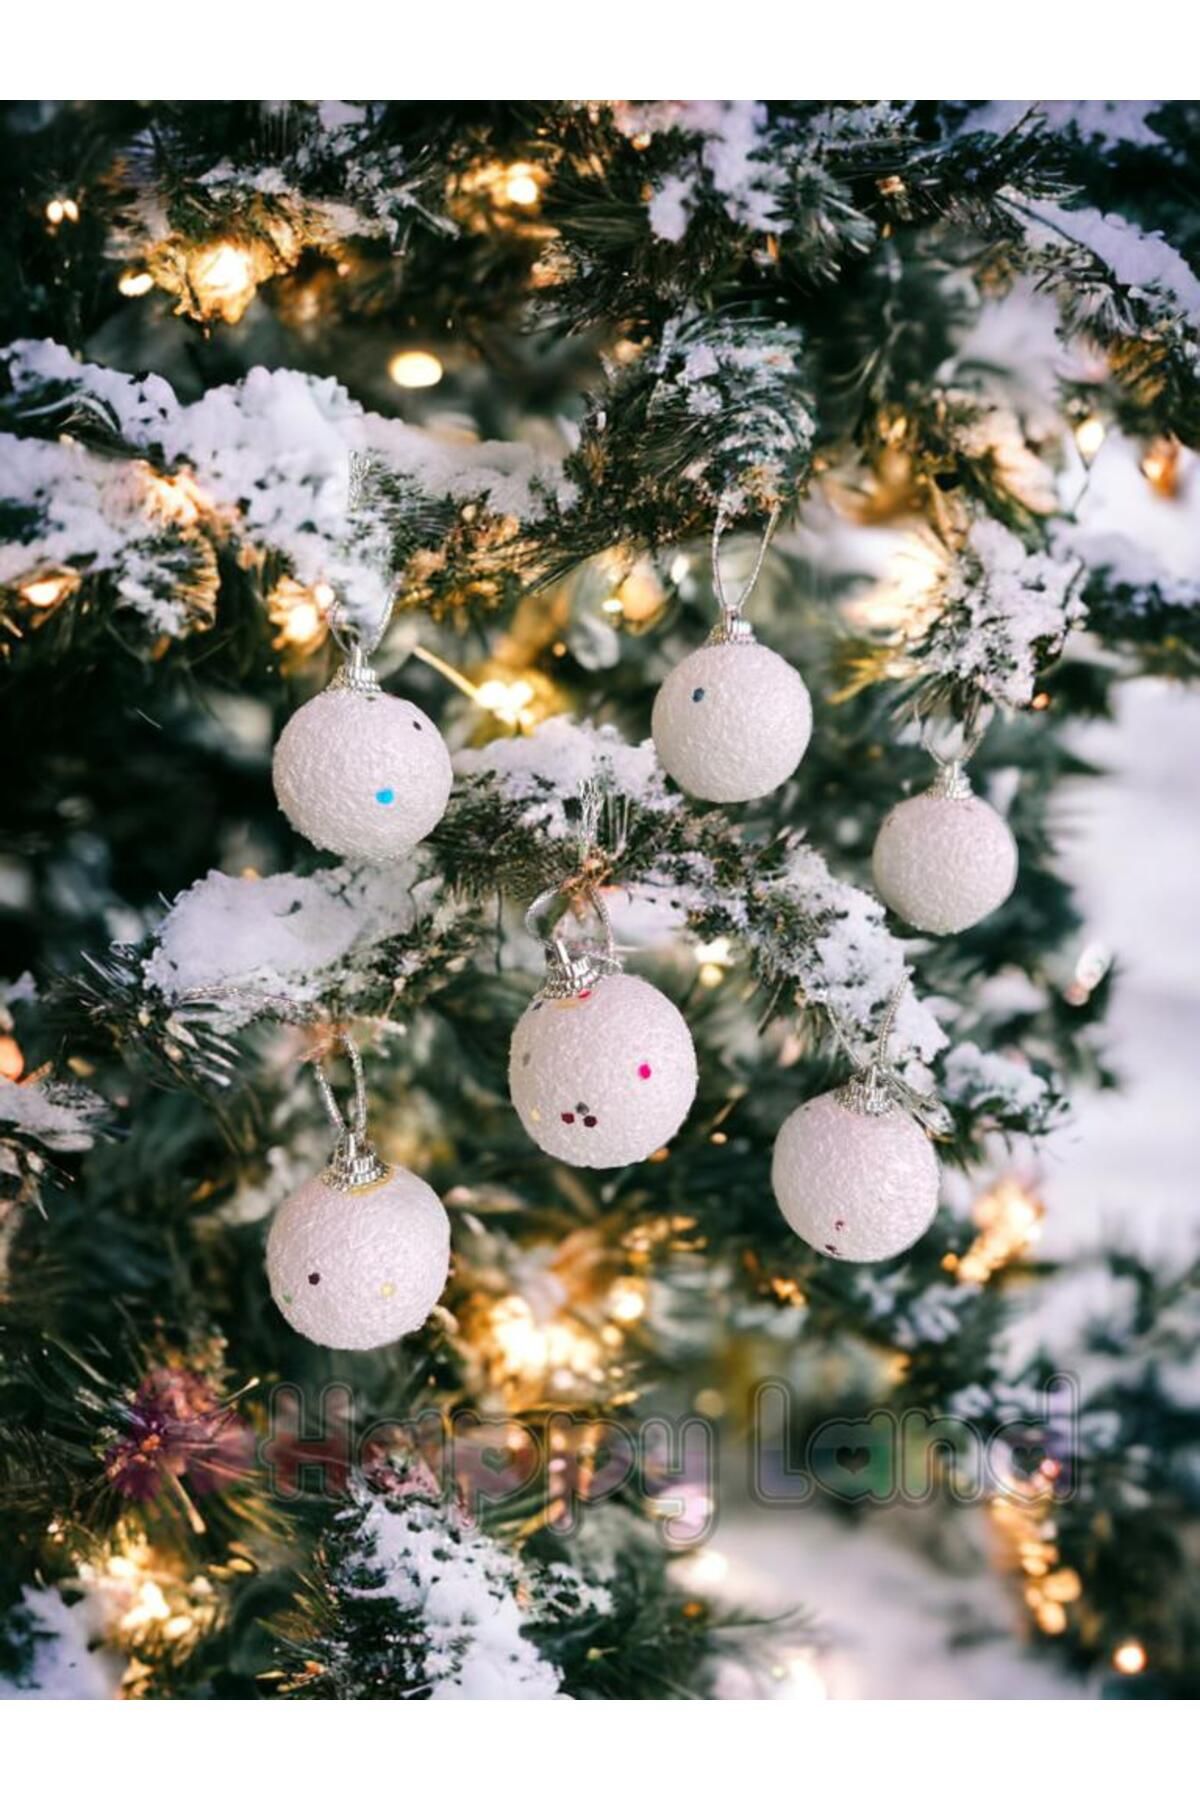 Happyland Yılbaşı Ağacı Süsleme 4 cm Beyaz Kar Topu 6'lı Kar Topu Ağaç Süsü Yeni Yıl